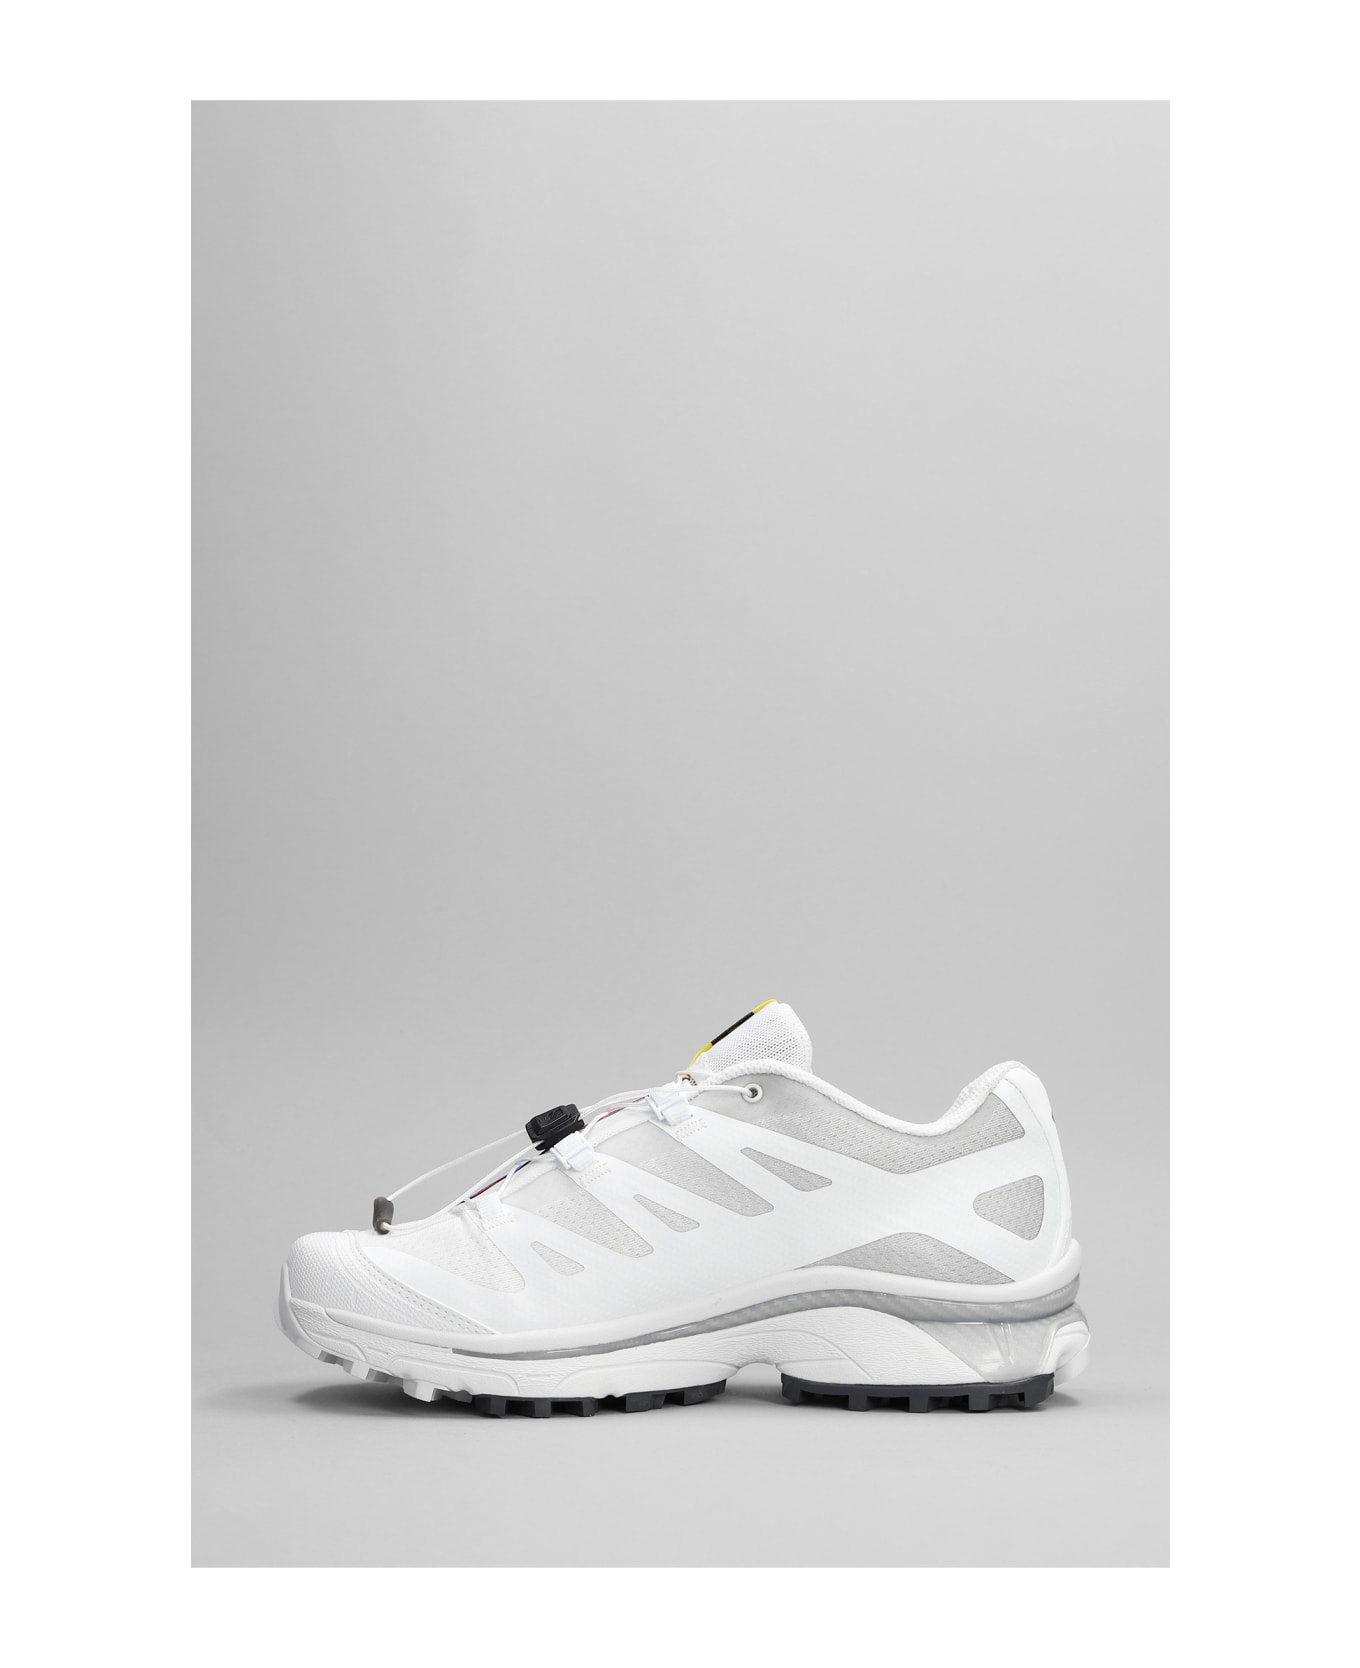 Salomon Xt-4 Og Sneakers In White Synthetic Fibers - White/ebony/lunar rock スニーカー